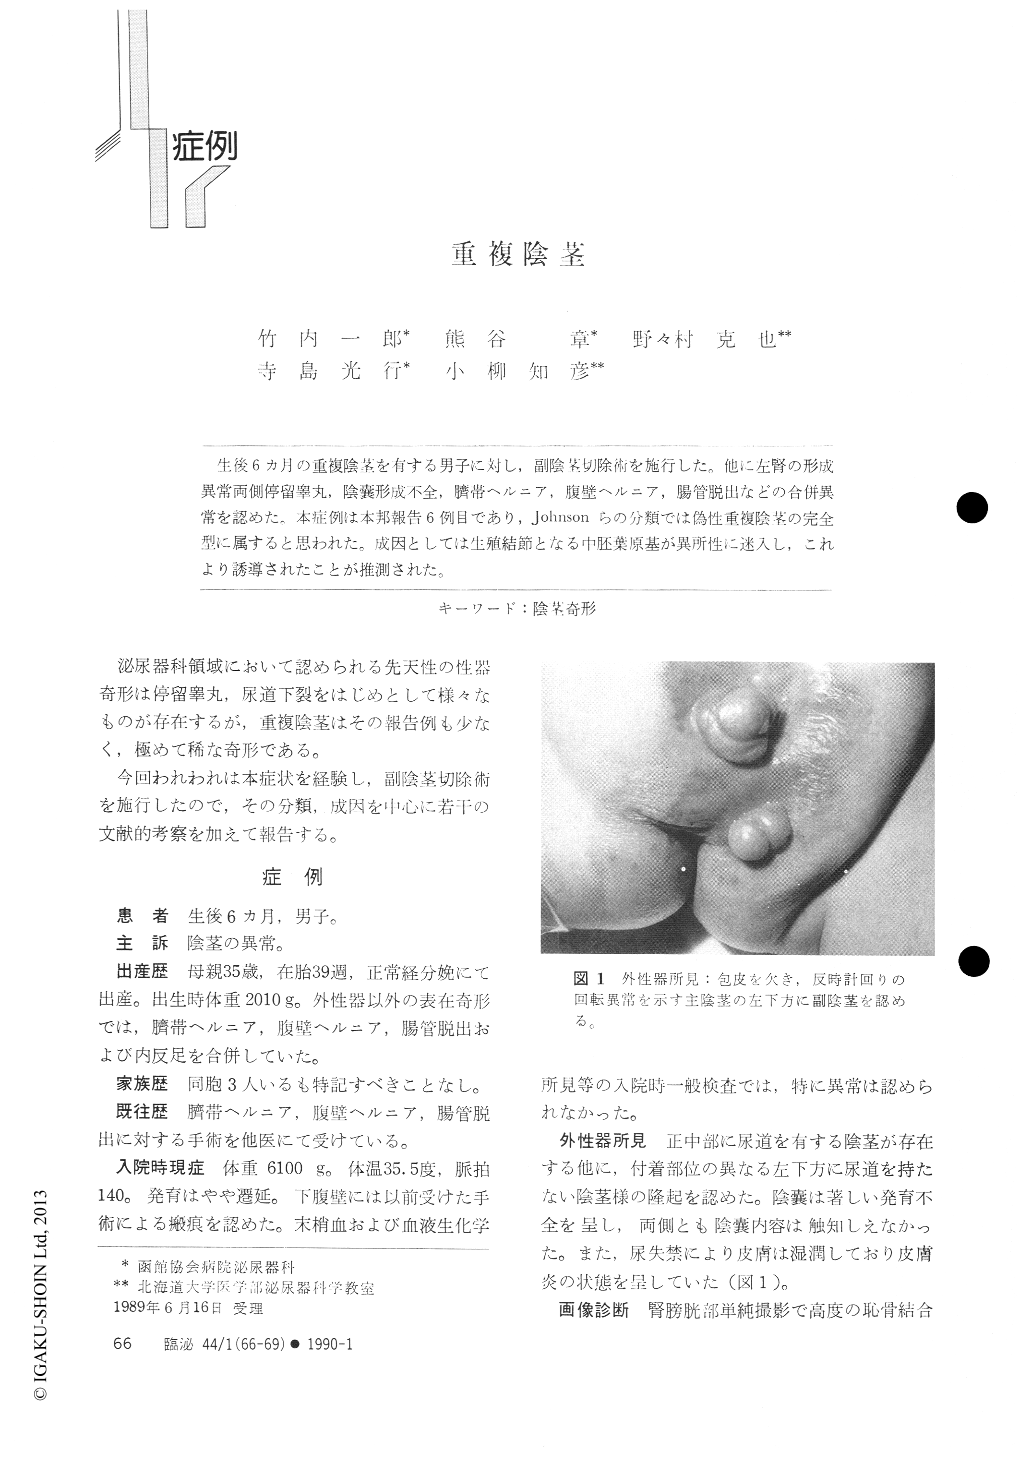 重複陰茎 臨床泌尿器科 44巻1号 医書 Jp